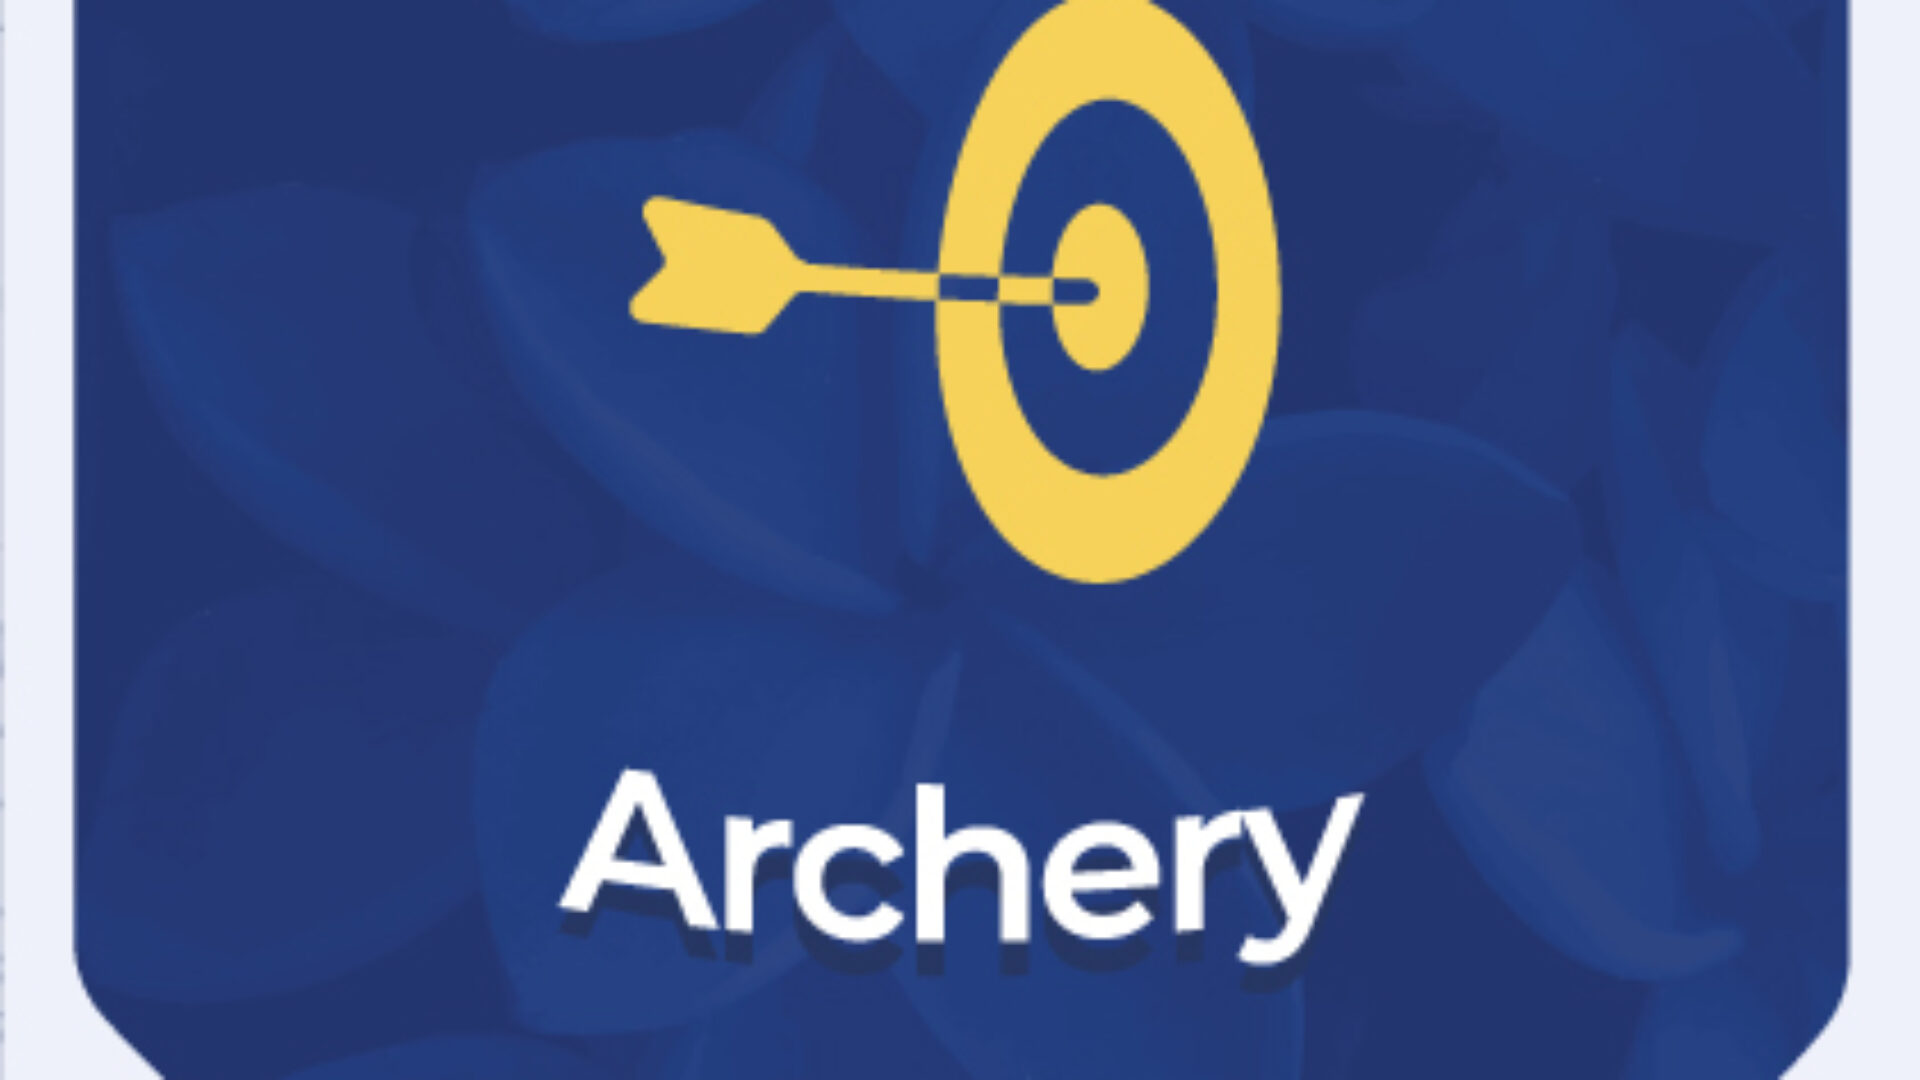 Archery Class